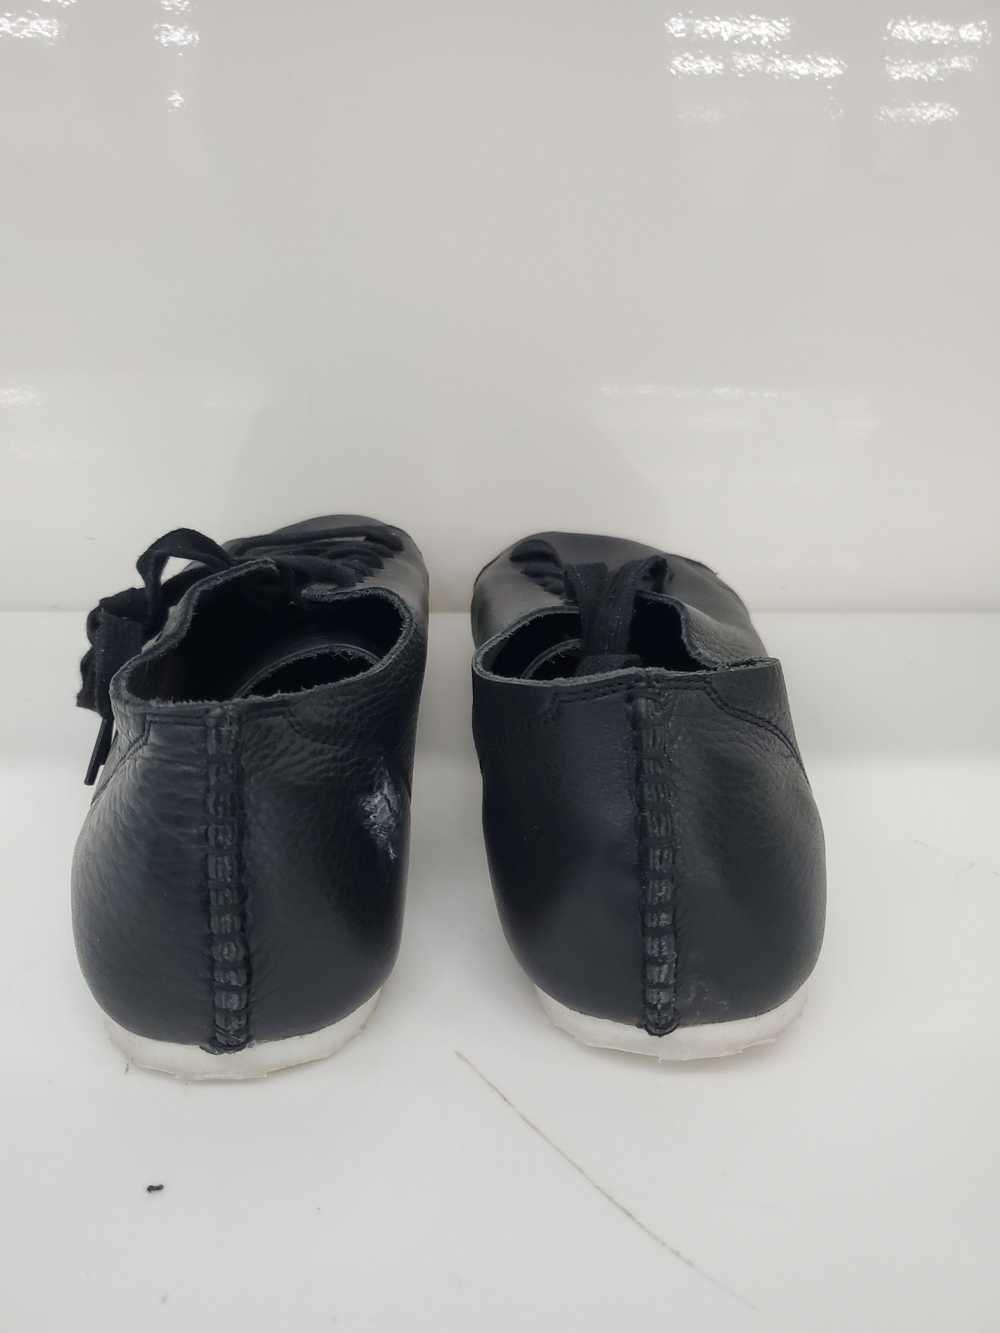 Men otz Shoes Leather Black Shoes Size-10.5 Used - image 5